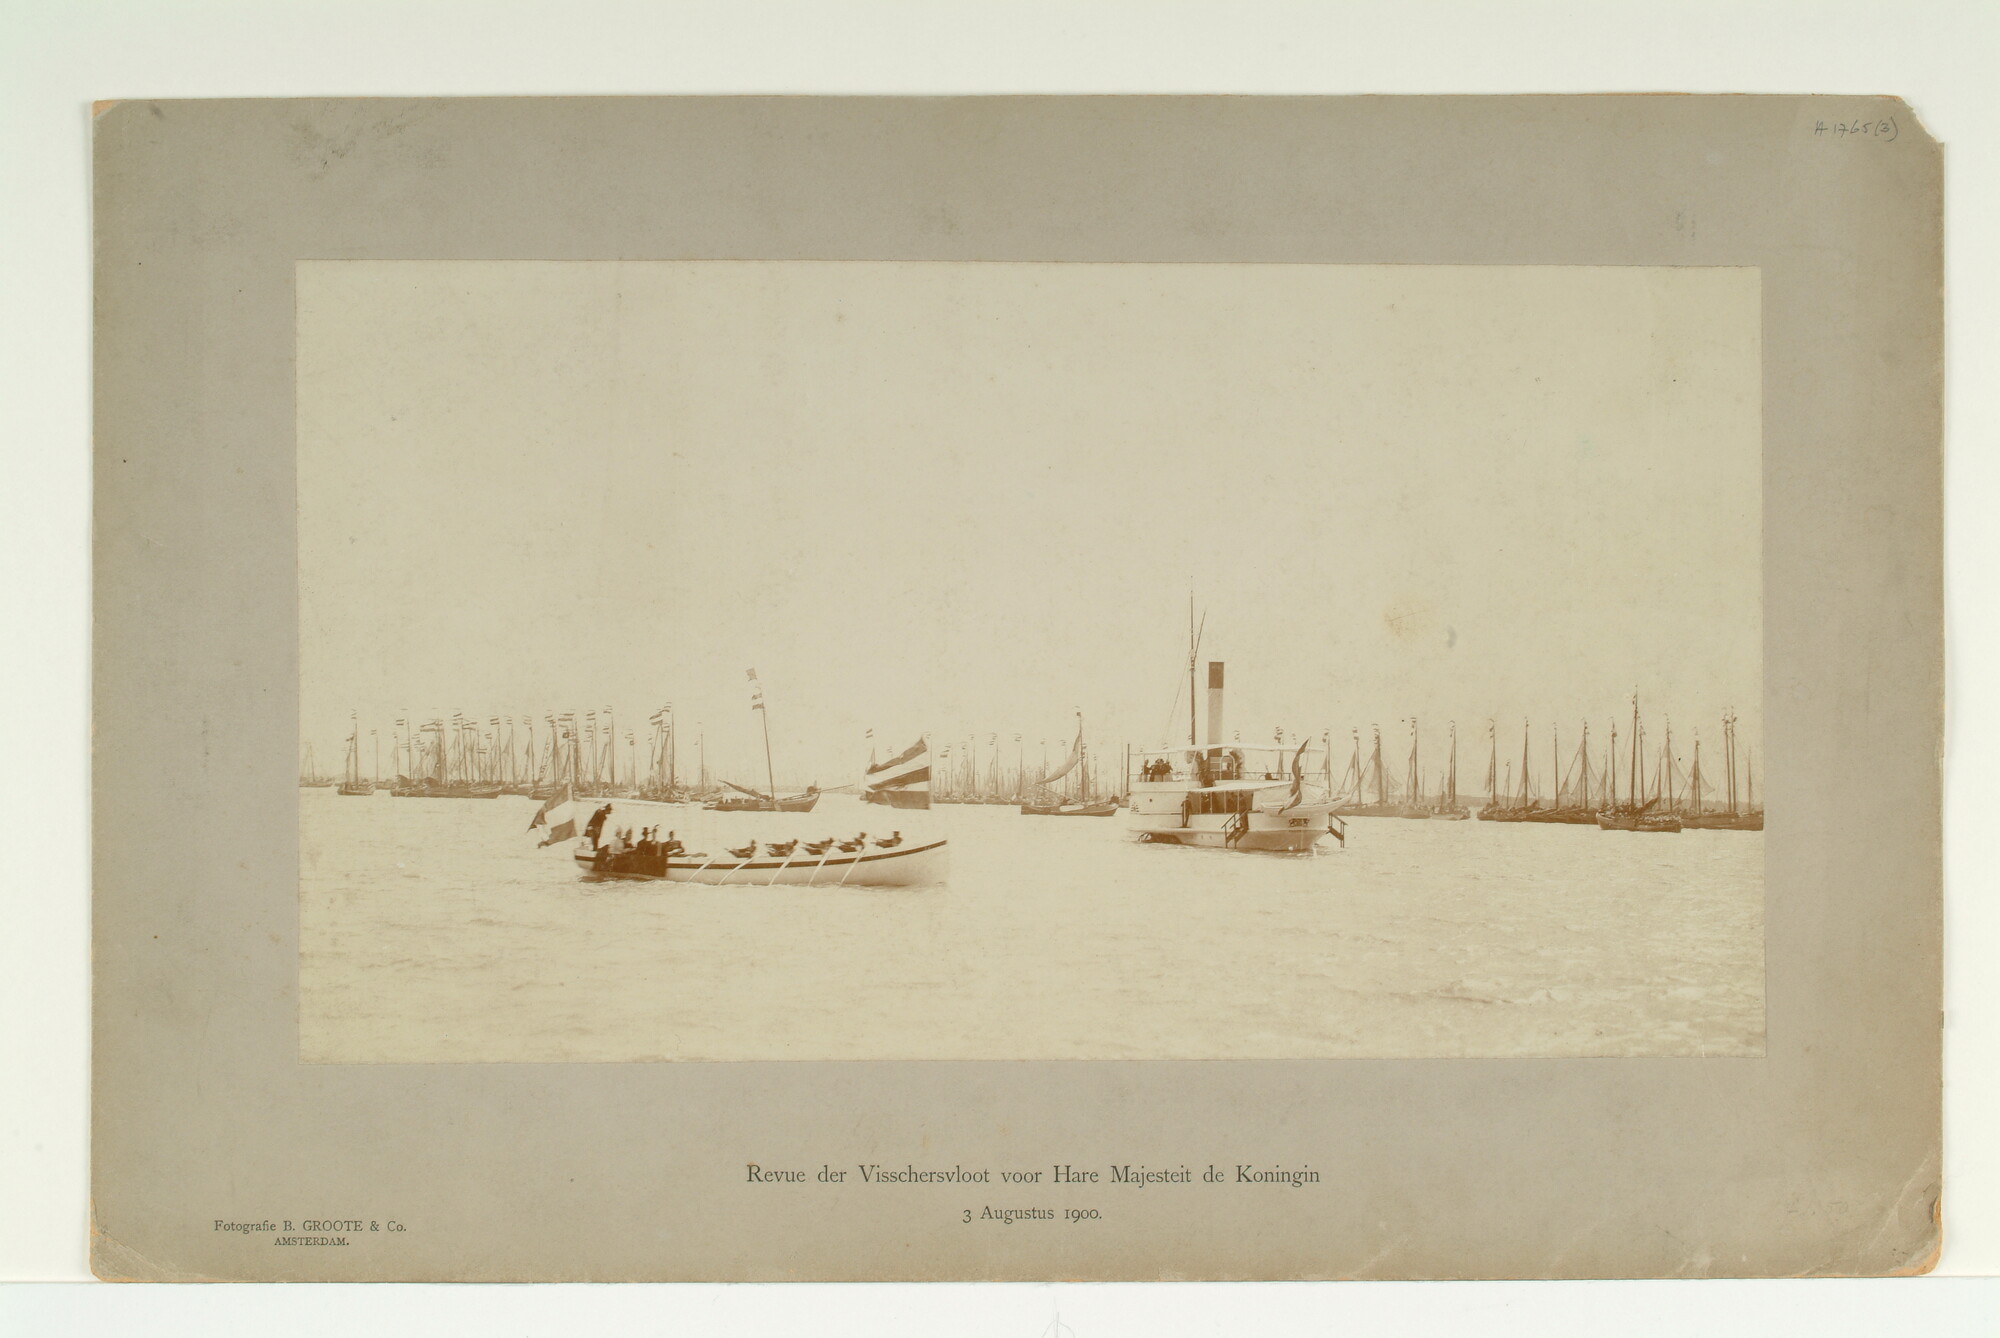 A.1765(03); Hr.Ms. 'Buyskes' als koninklijk jacht tijdens de vissersvloot-revue bij Muiden; foto